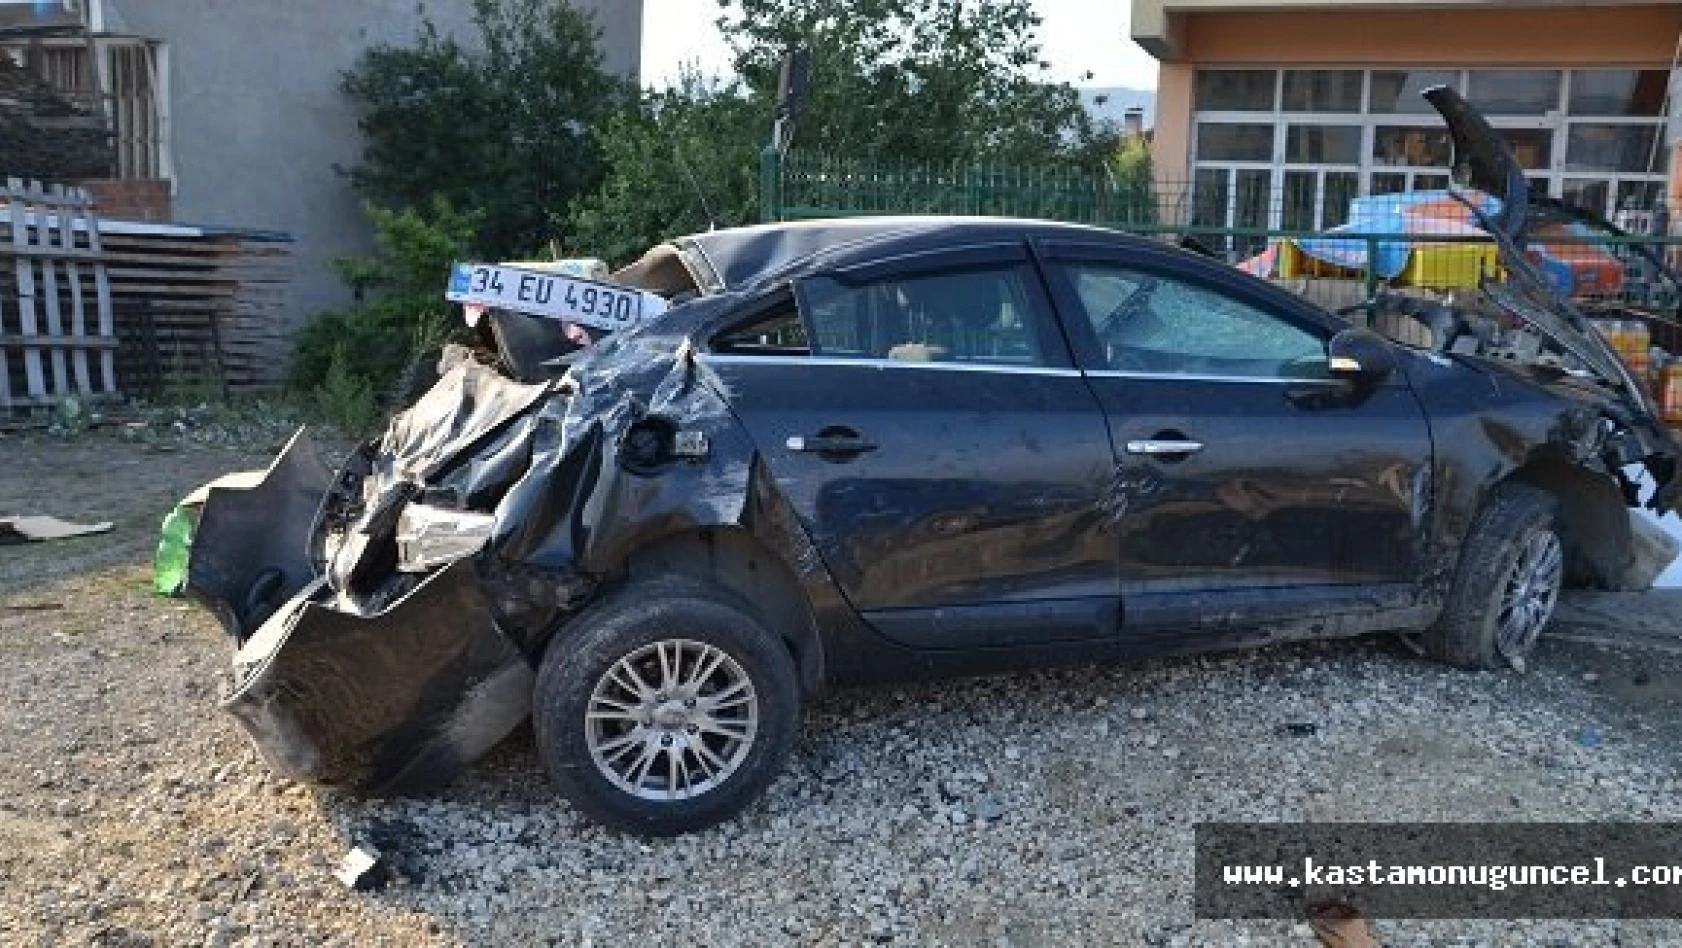 Kastamonu'da Trafik Kazası: 1 Ölü, 3 Yaralı